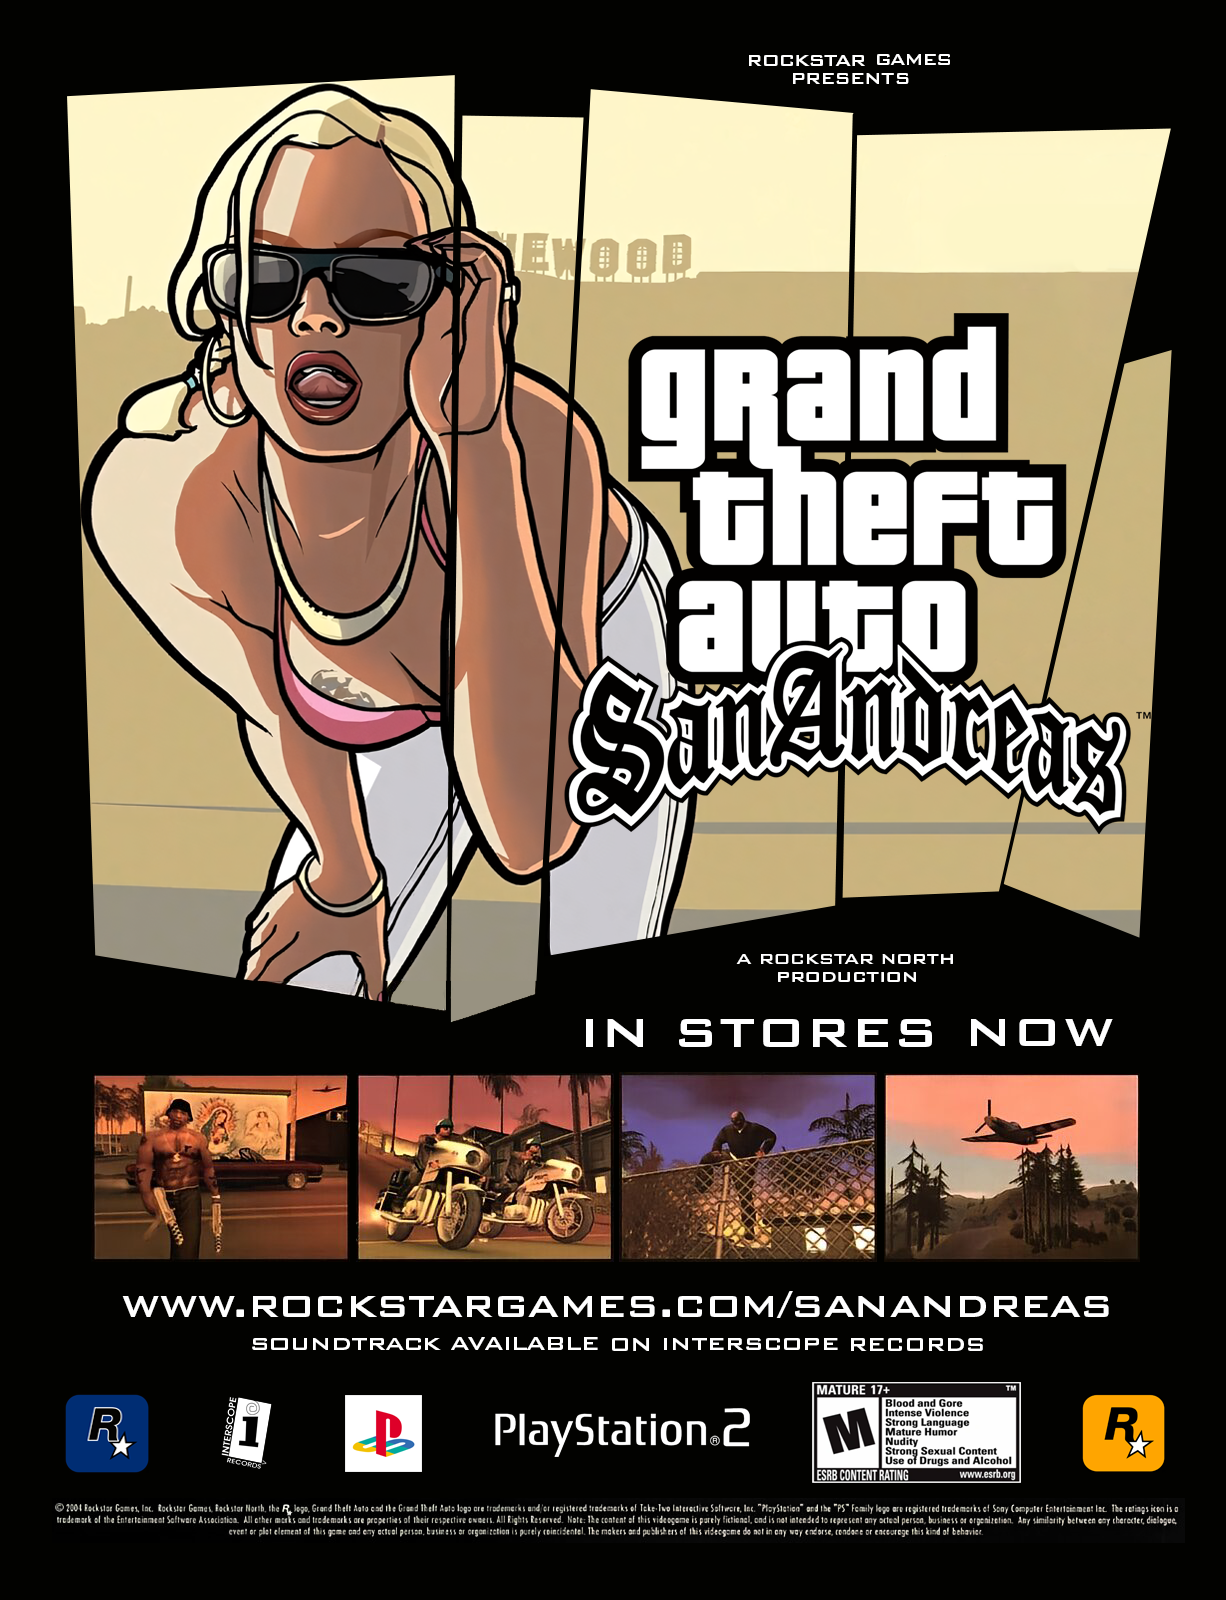 Gta San Andreas dvd cover ps2 version original by BayronR on DeviantArt